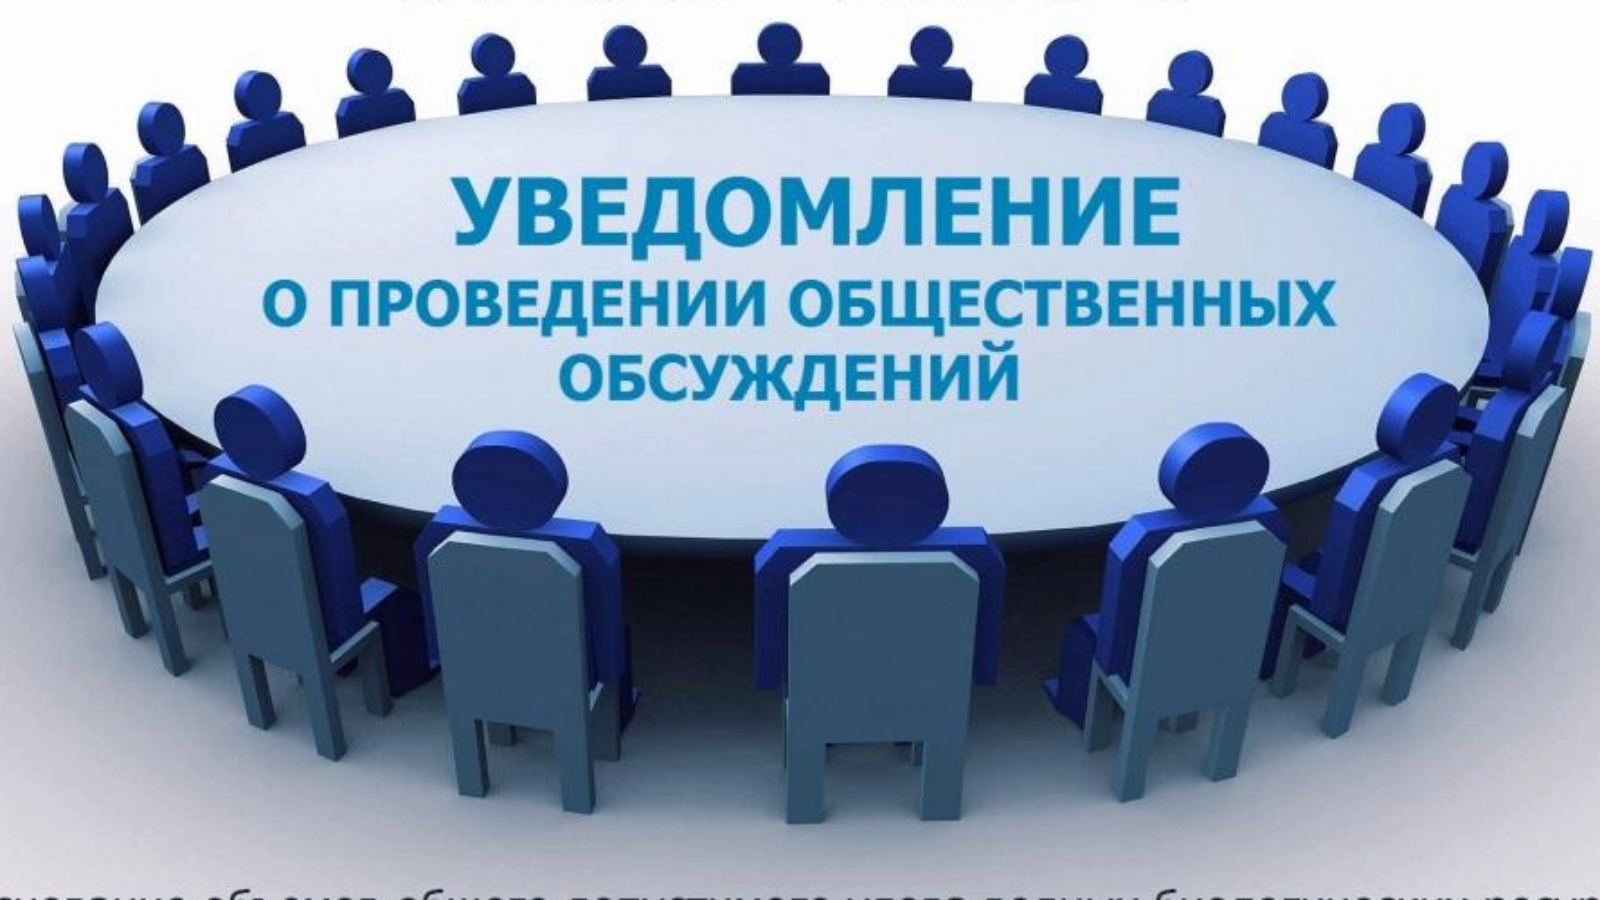 Администрация Кирово-Чепецкого района информирует о проведении общественного обсуждения  проекта постановления администрации Кирово-Чепецкого района.